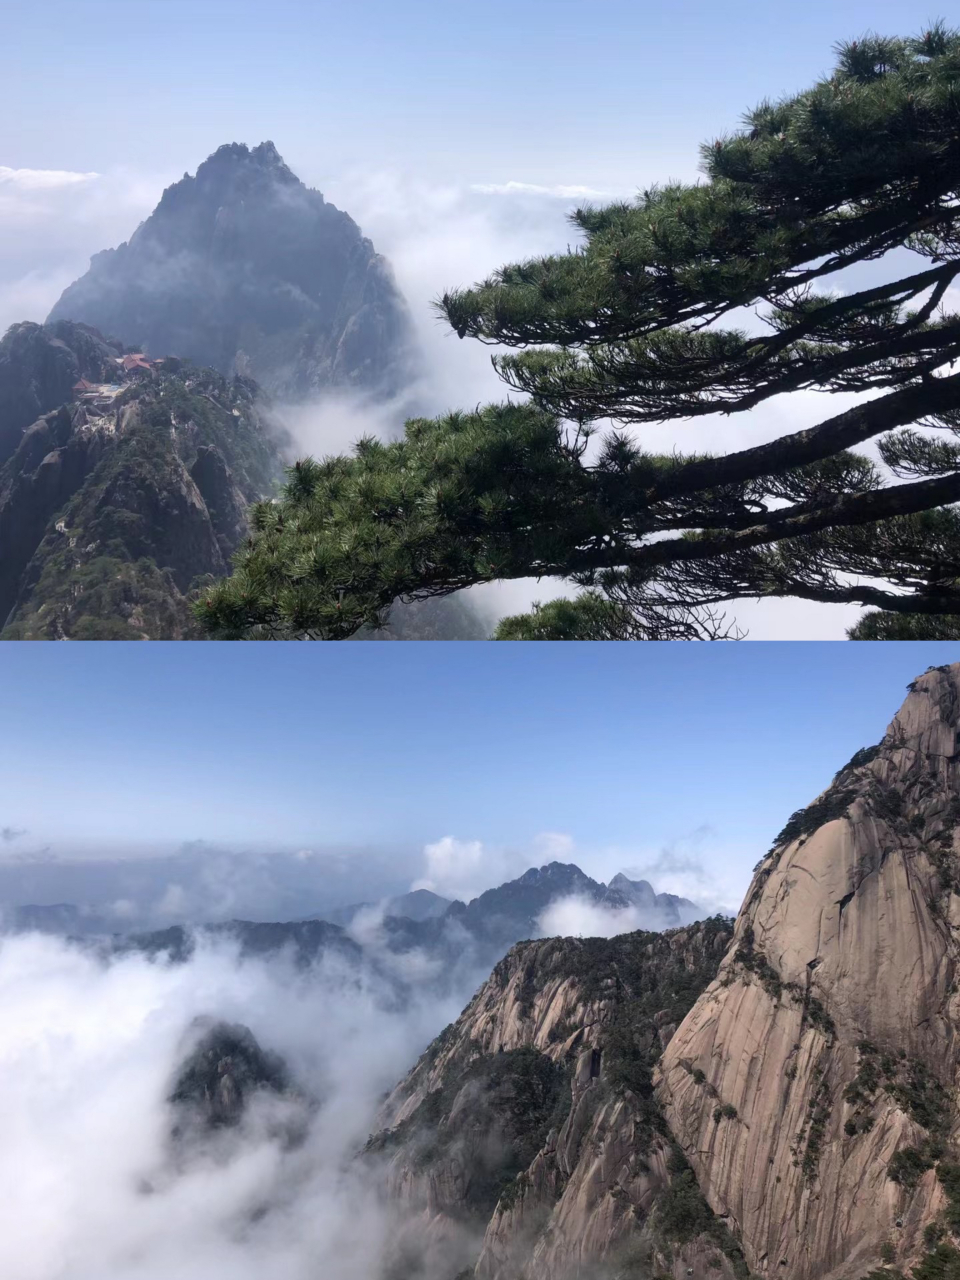 中国最美的五大名山,黄山风景区是中国十大风景名胜区之一,大家此生